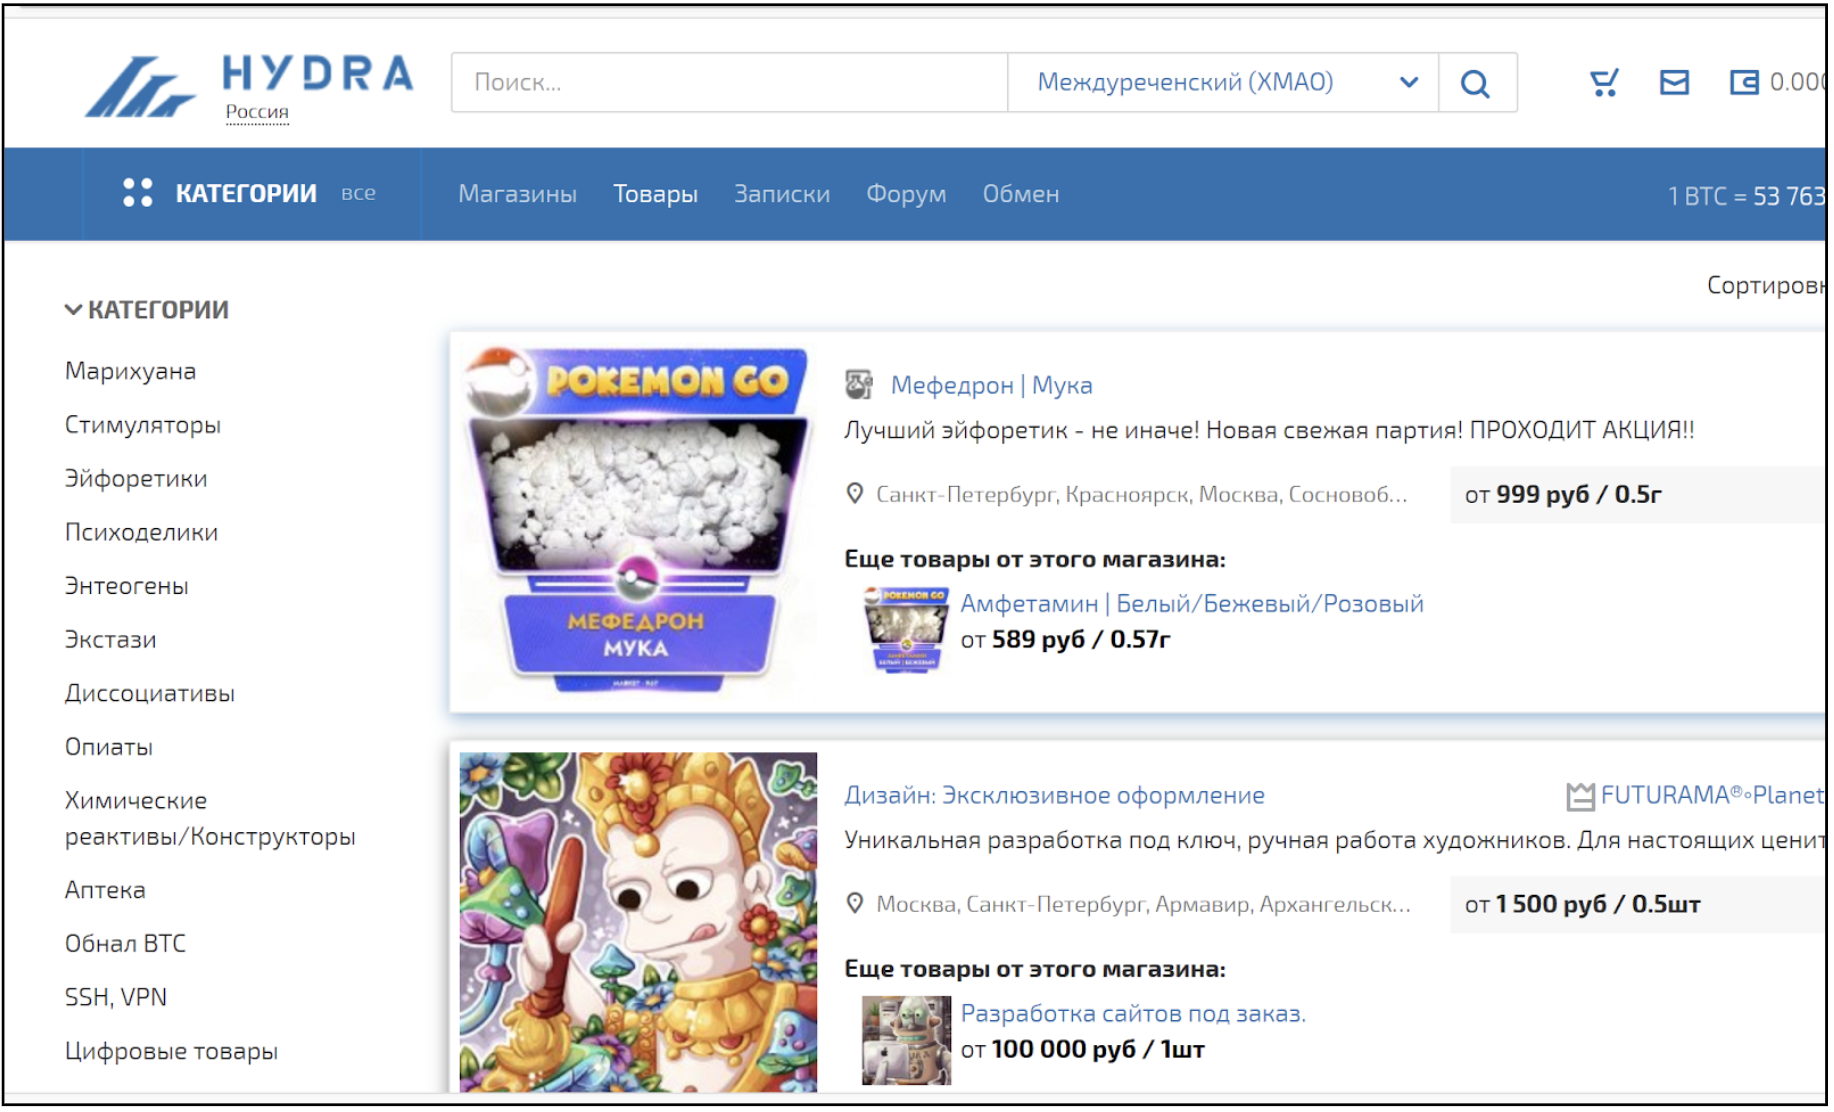 Даркнет вконтакте hydra2web скачать браузер тор бесплатно на русском языке торрент hyrda вход